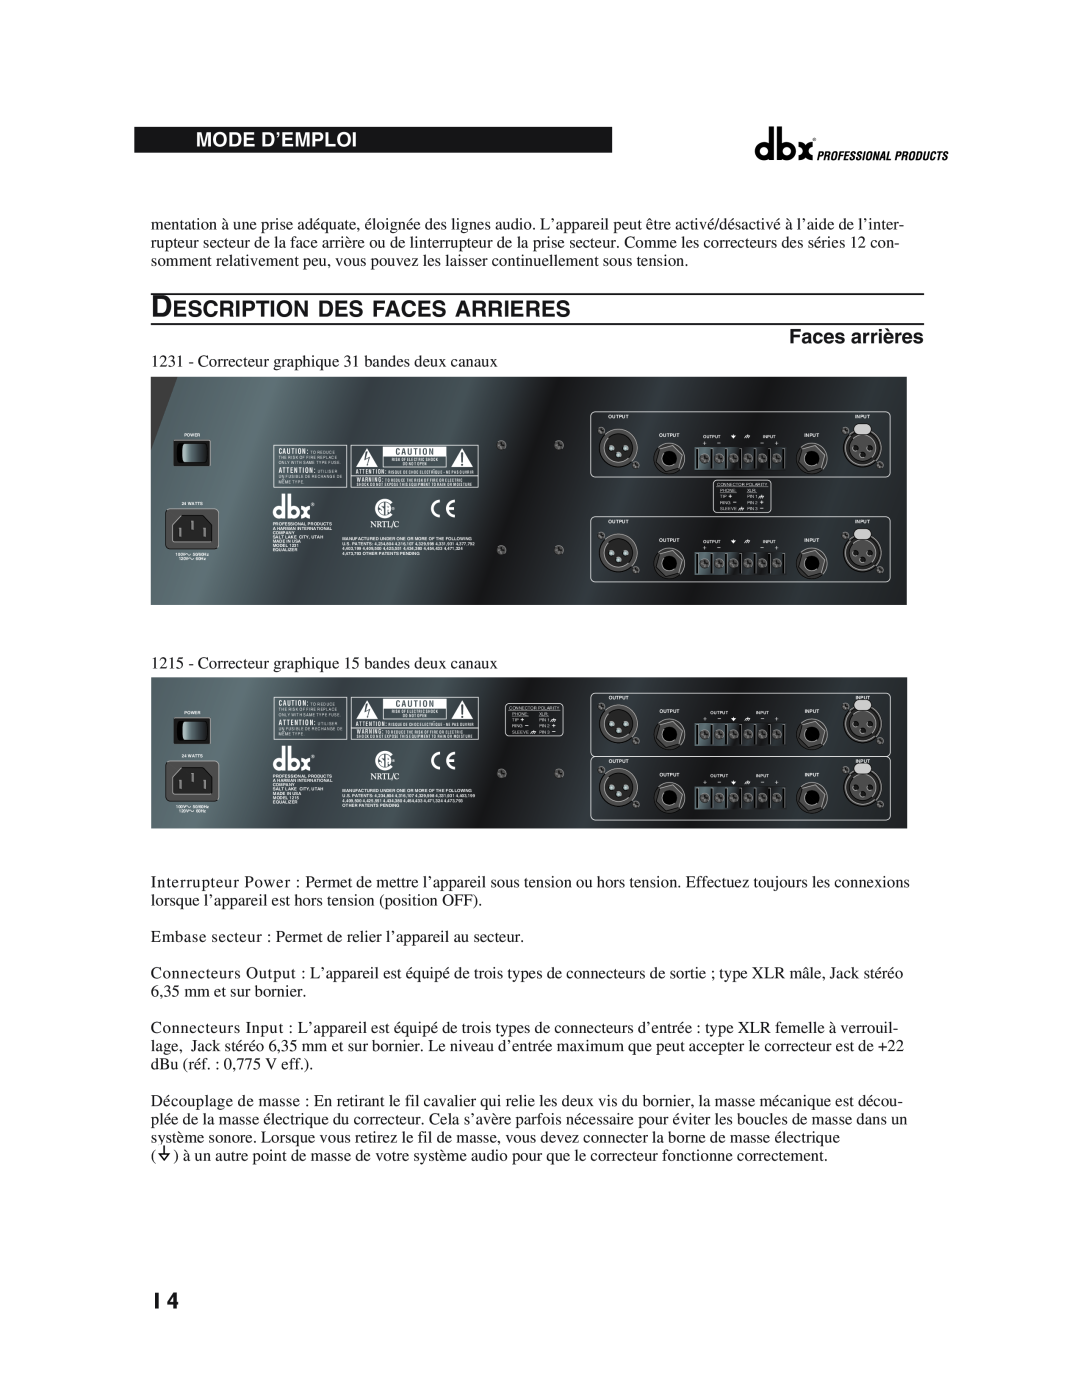 dbx Pro 12 Series operation manual Description Des Faces Arrieres, Mode D’Emploi, Faces arrières 